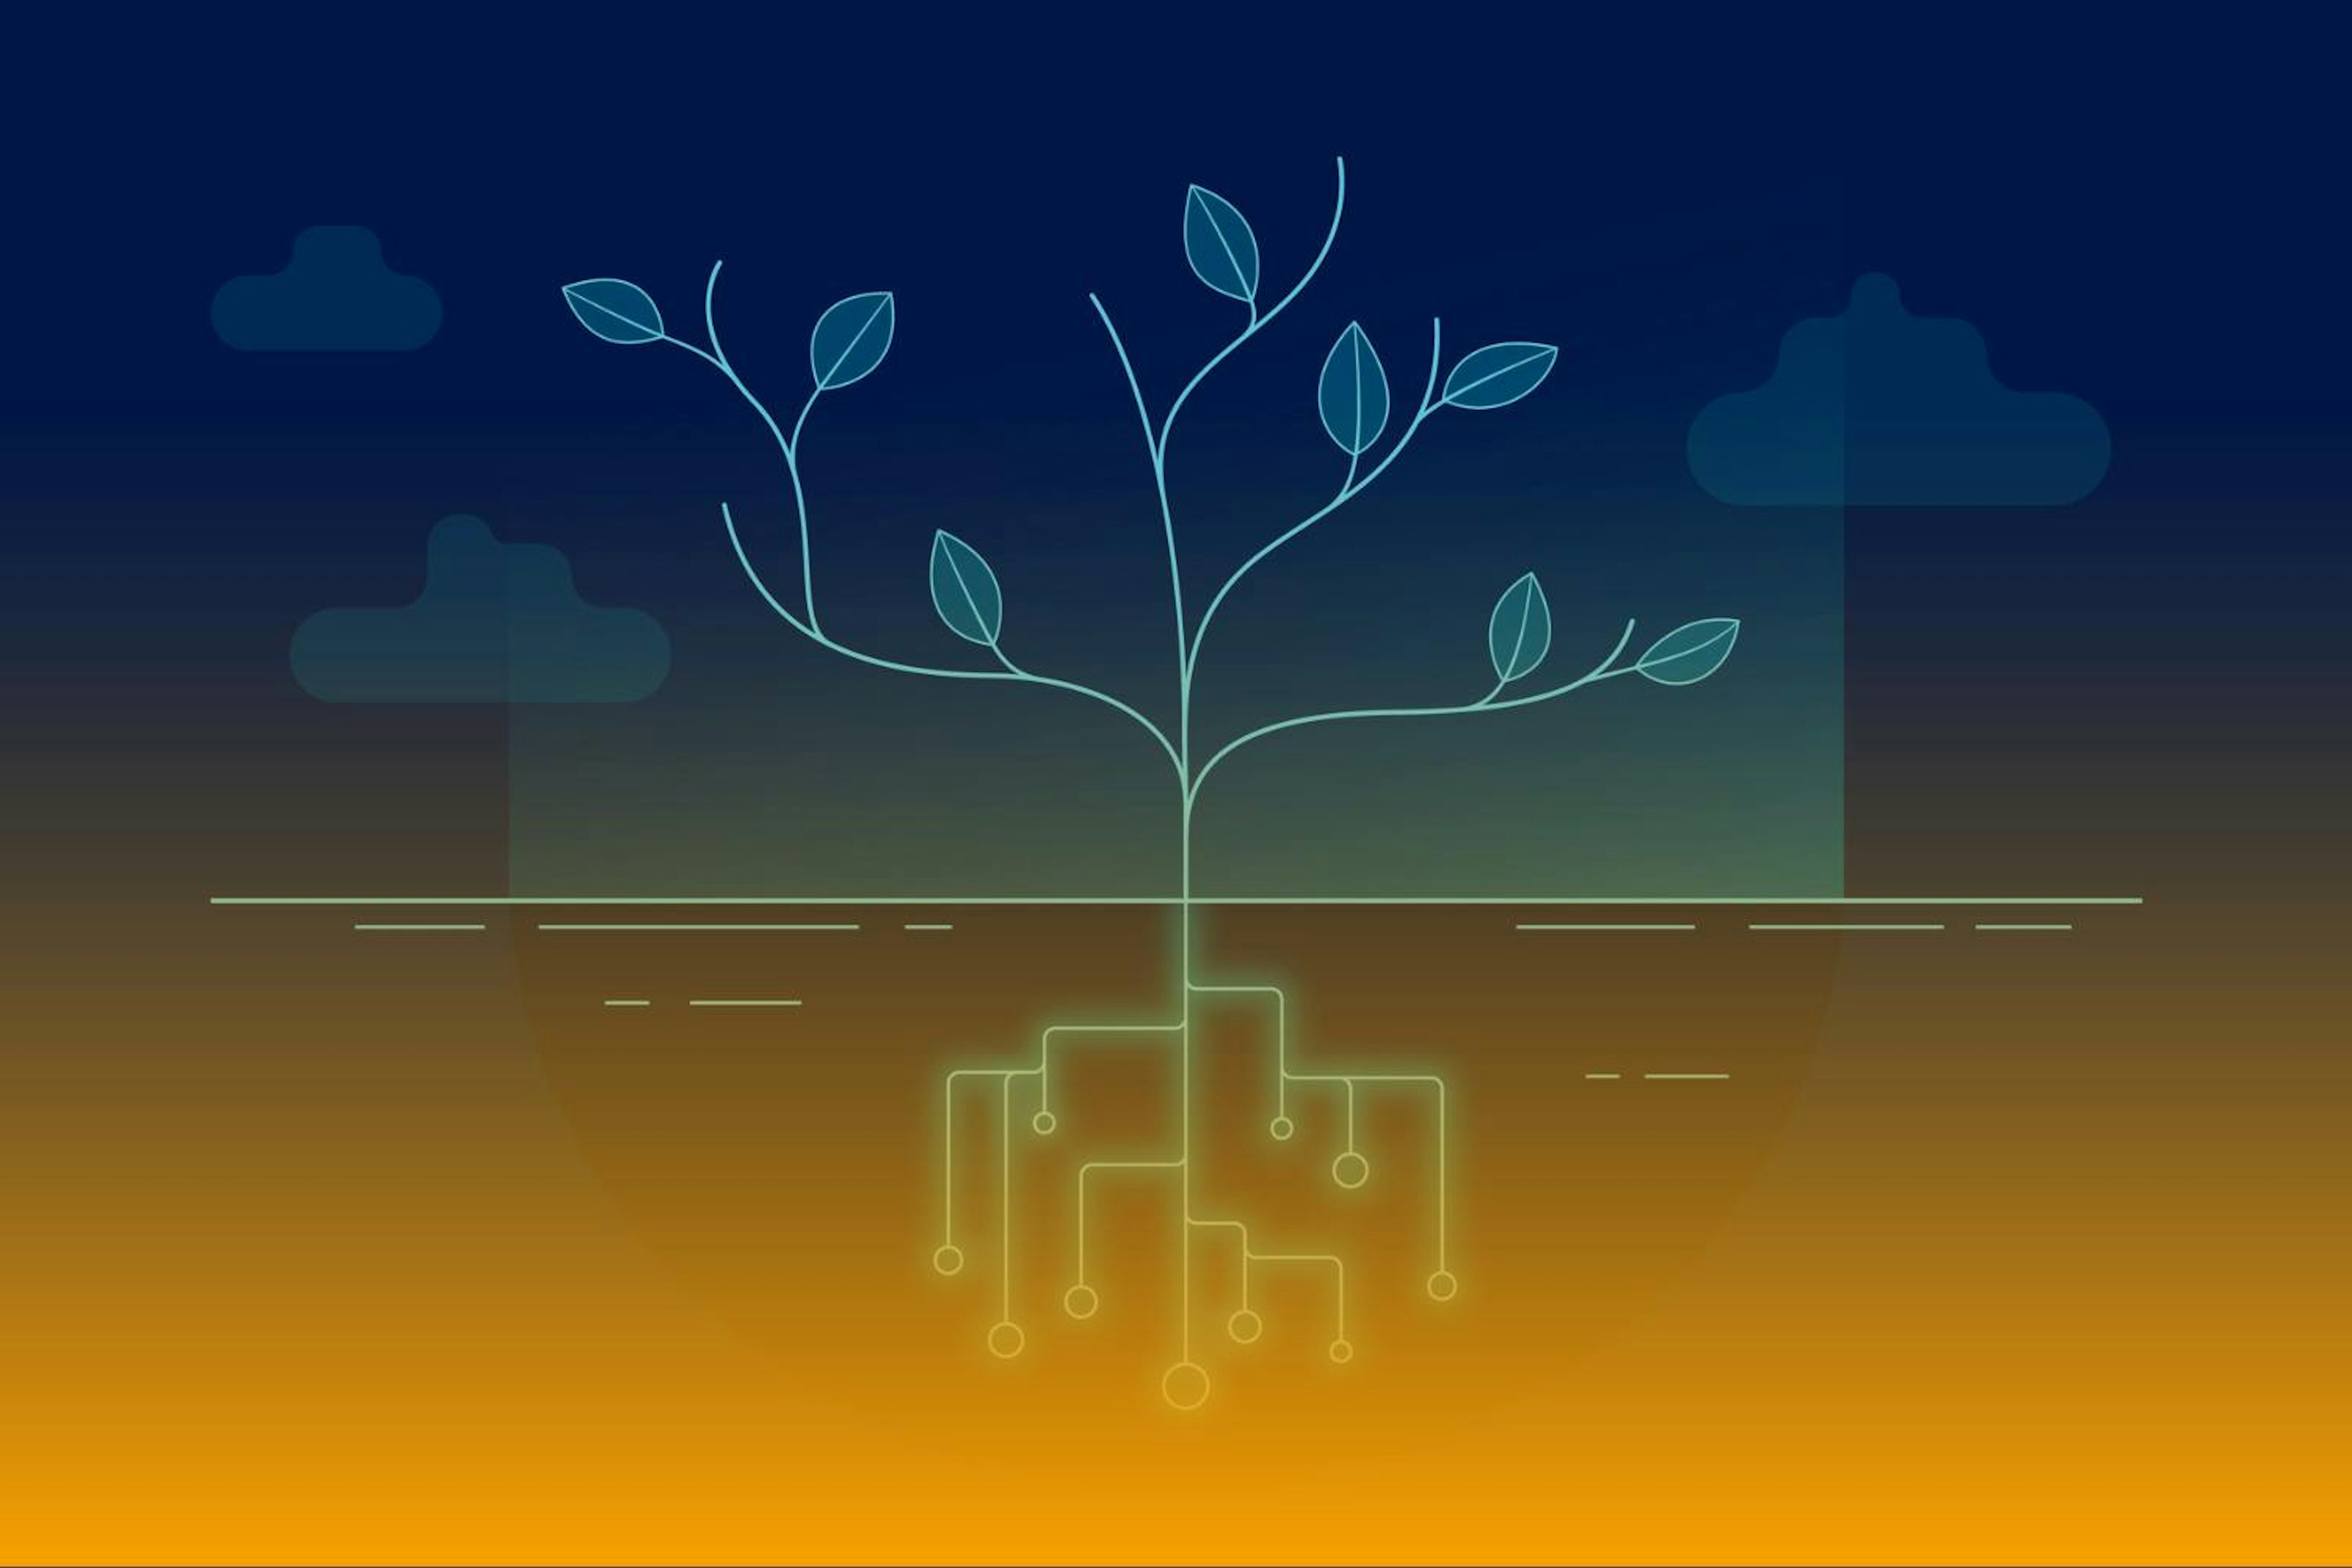 arte de uma árvore com raízes de conexões digitais representando a tecnologia sustentável